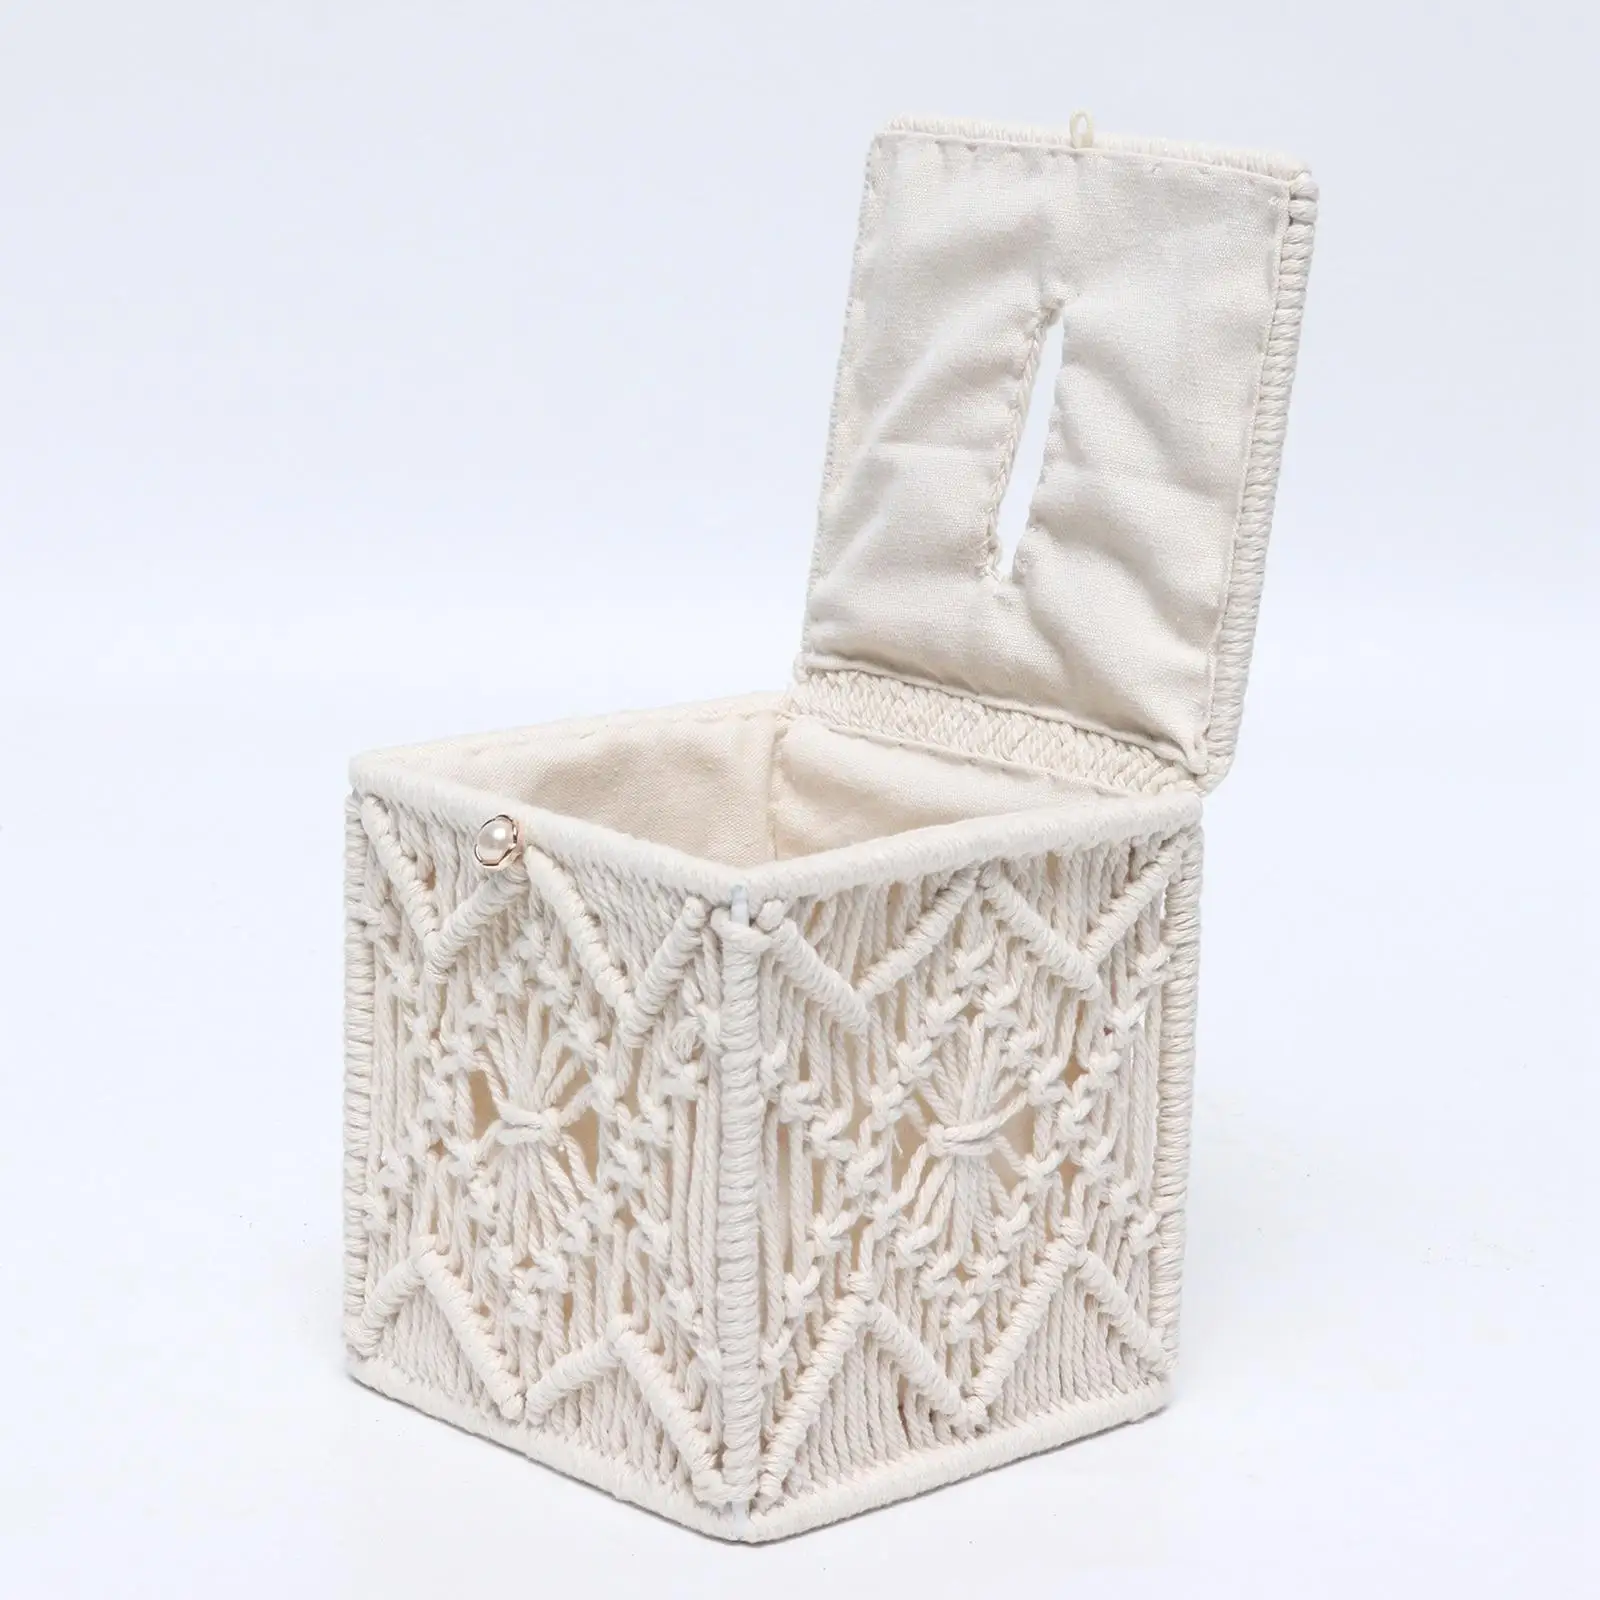 Tissue Box Cover Decorative Napkin Paper Box for Office Desk & Car Dresser